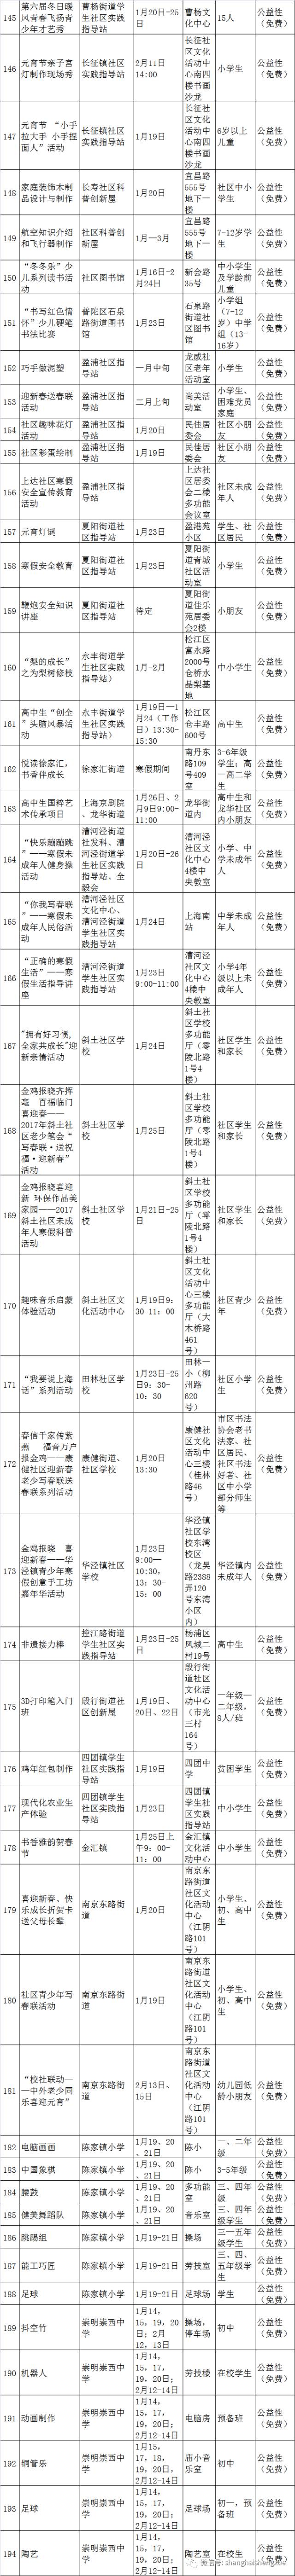 寒假上海近百所学校提供兴趣班 覆盖小初高且全免费